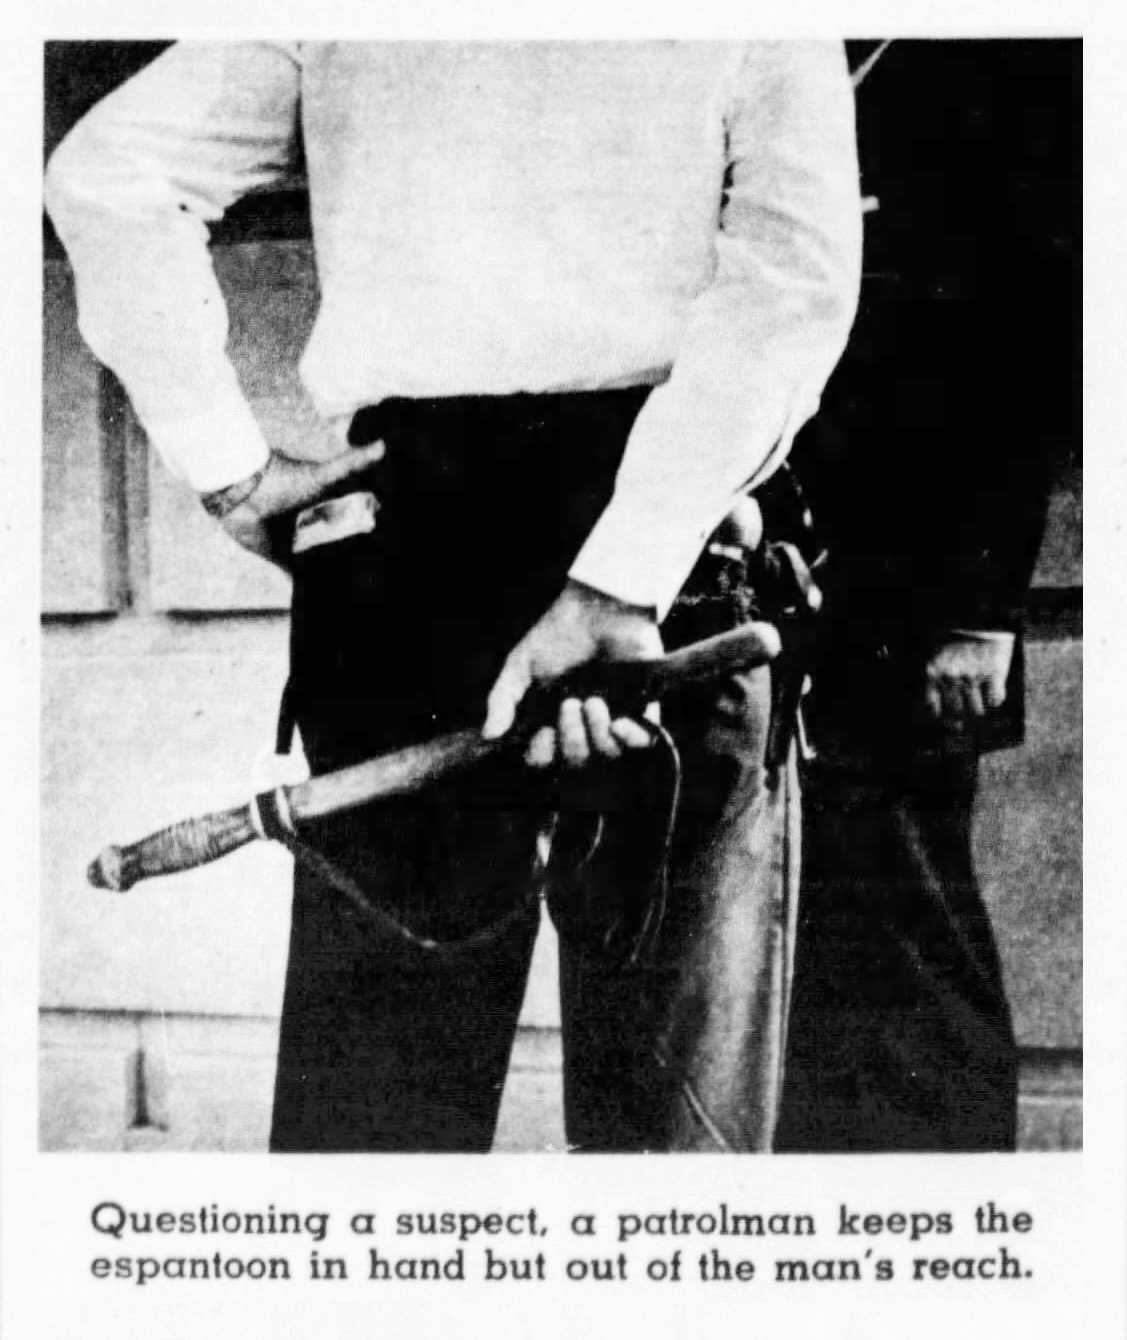 The Baltimore Sun Sun Nov 20 1960 4a